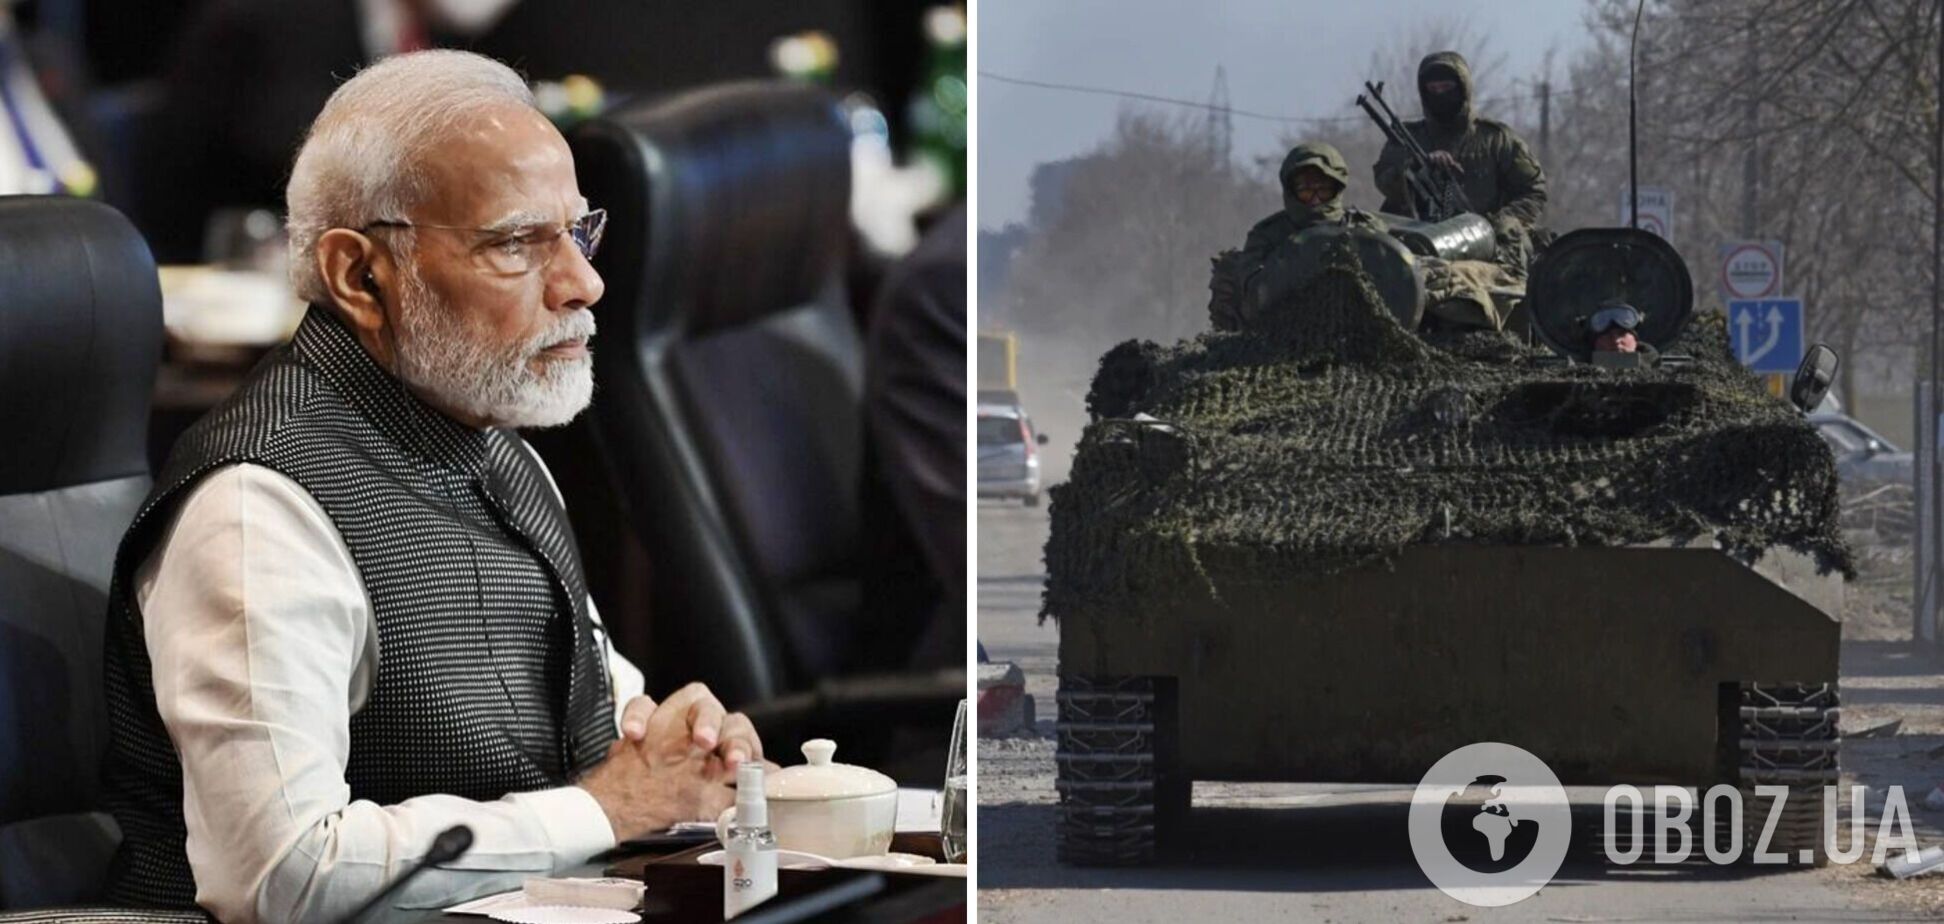 Индия выразила желание приобщиться к восстановлению мира в Украине, но Россию агрессором не назвала